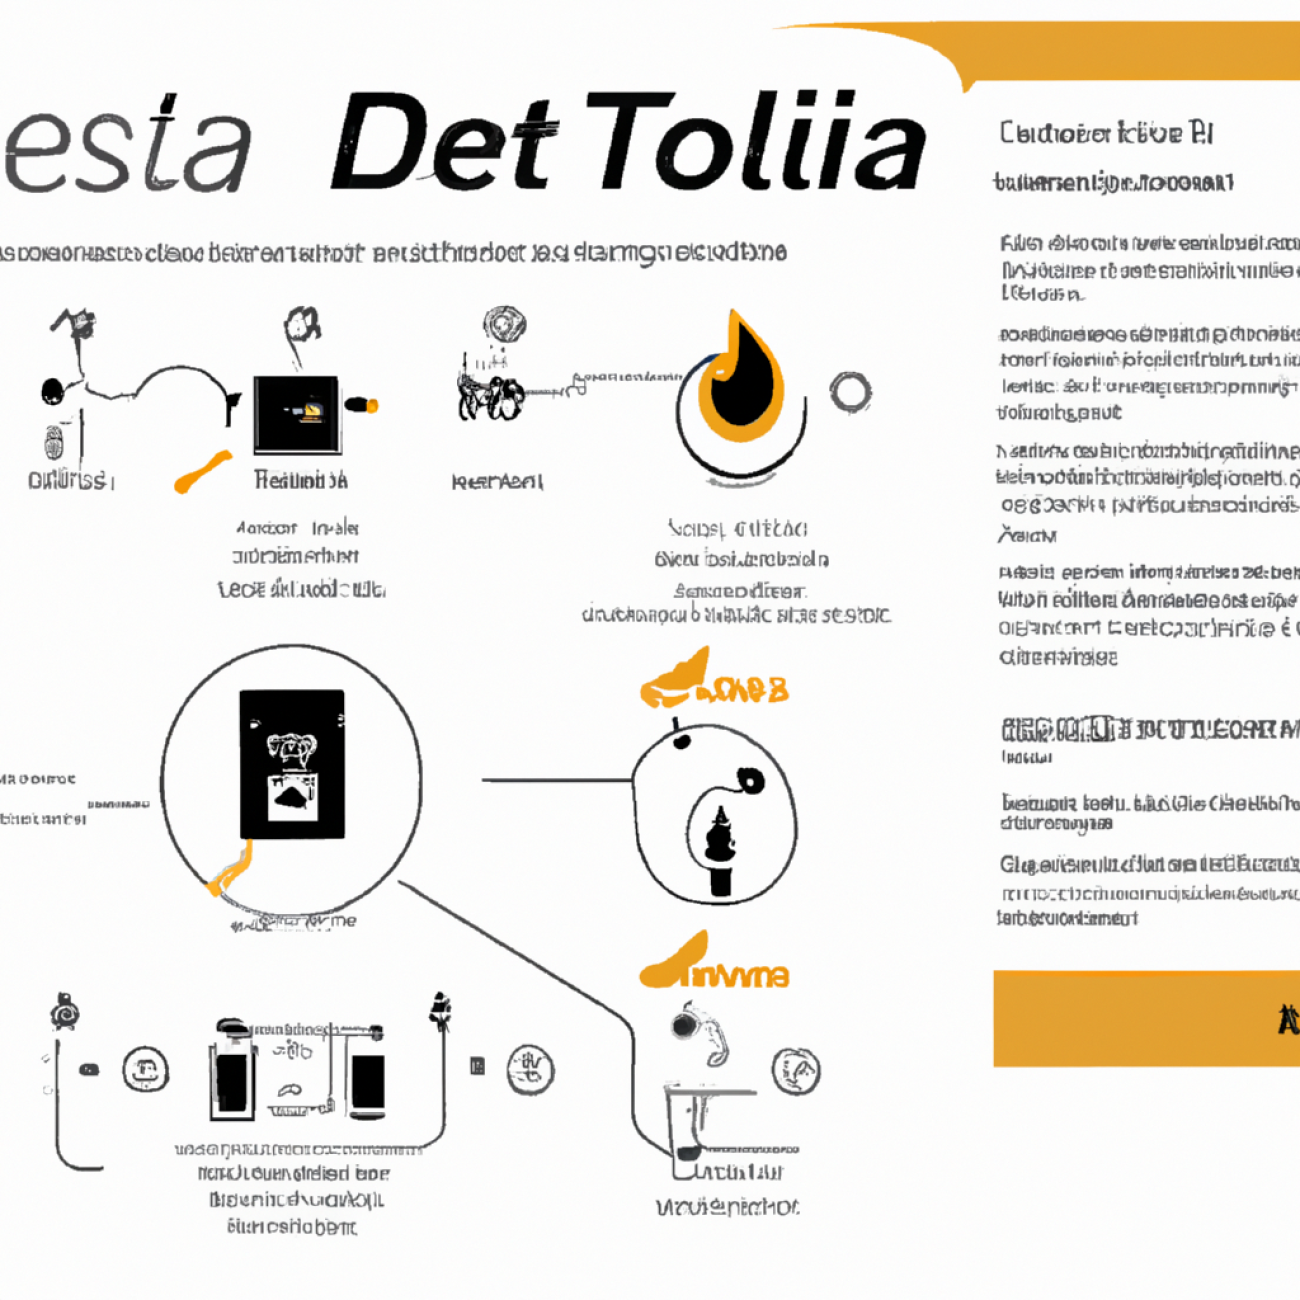 4. Návod k použití Plynového Kotle Destila Ocelot Eco: Praktické tipy a triky